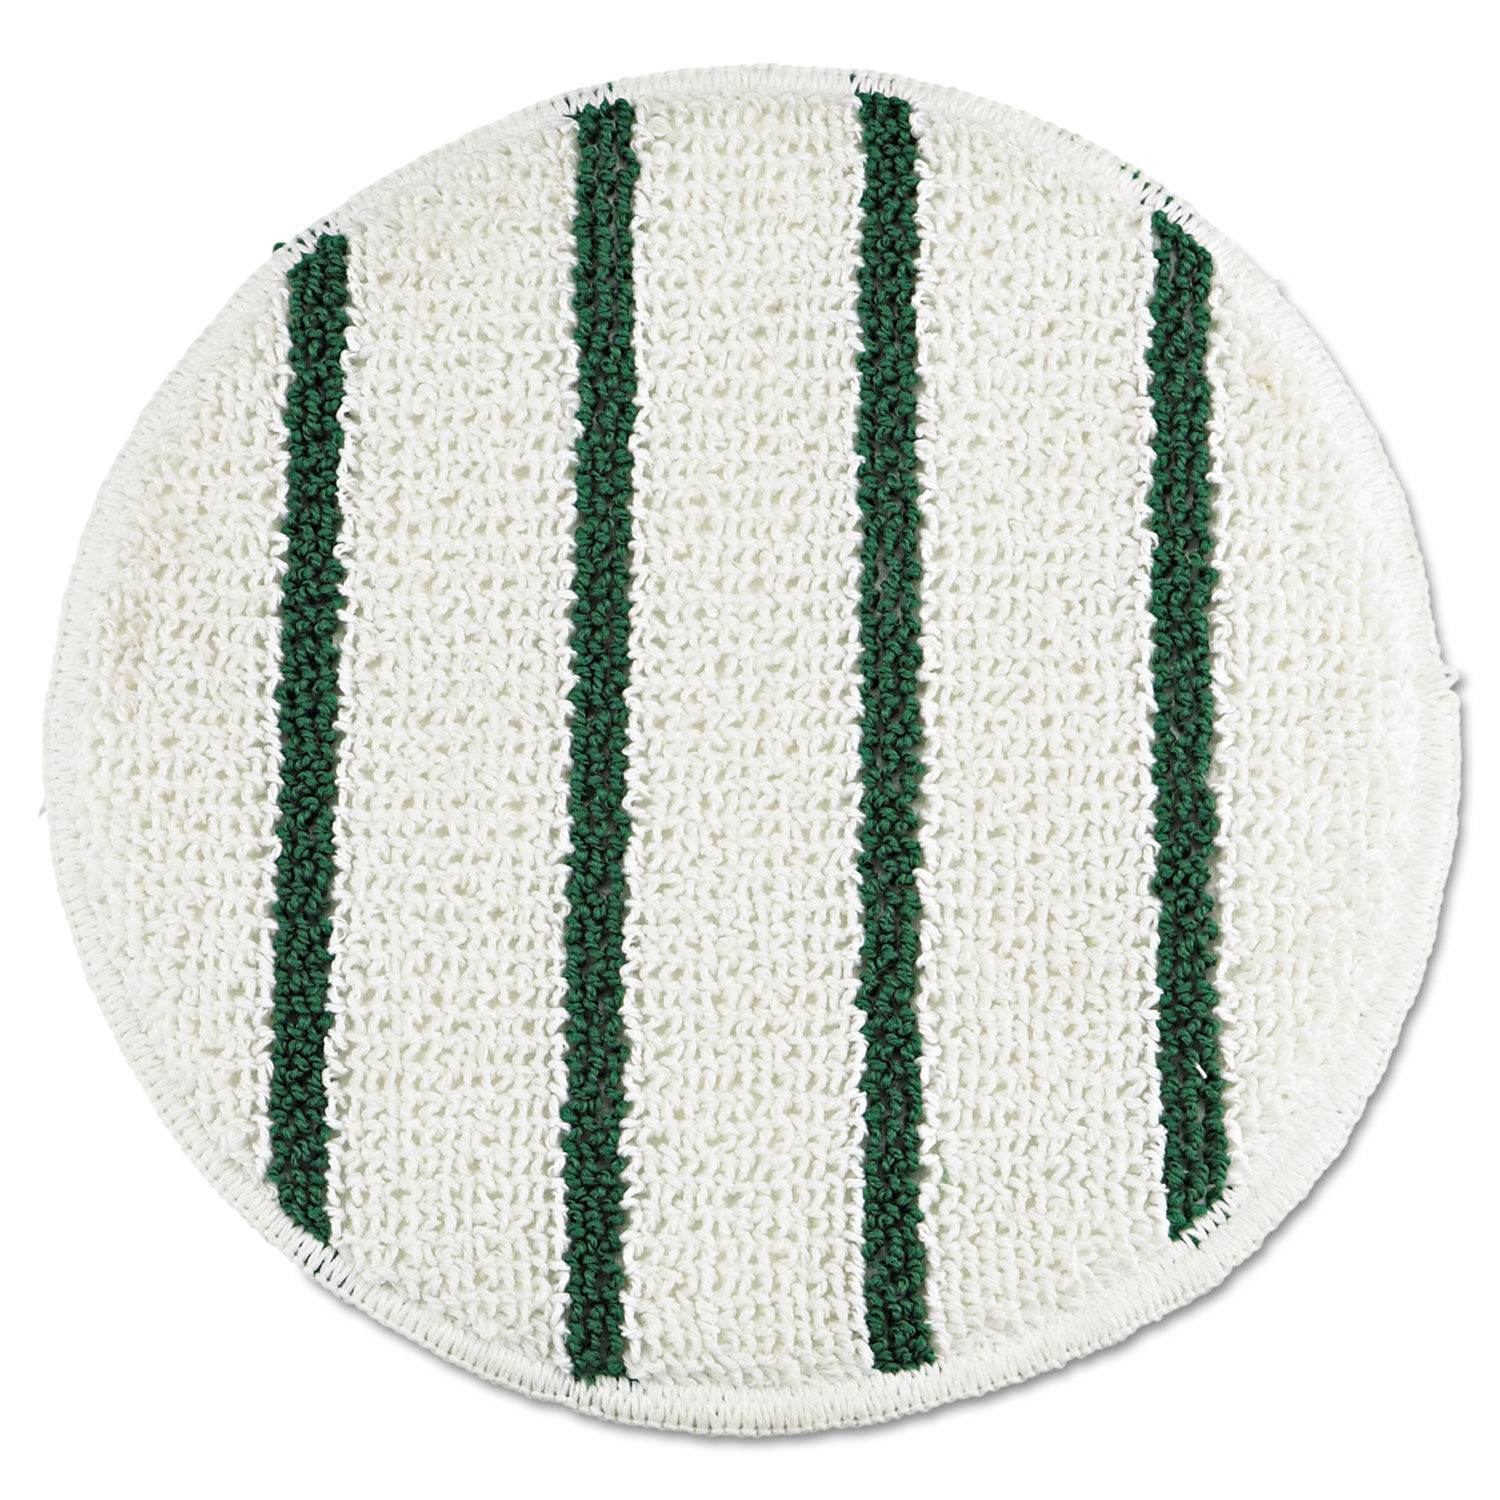 Low Profile Scrub-Strip Carpet Bonnet 19" Diameter, White/Green